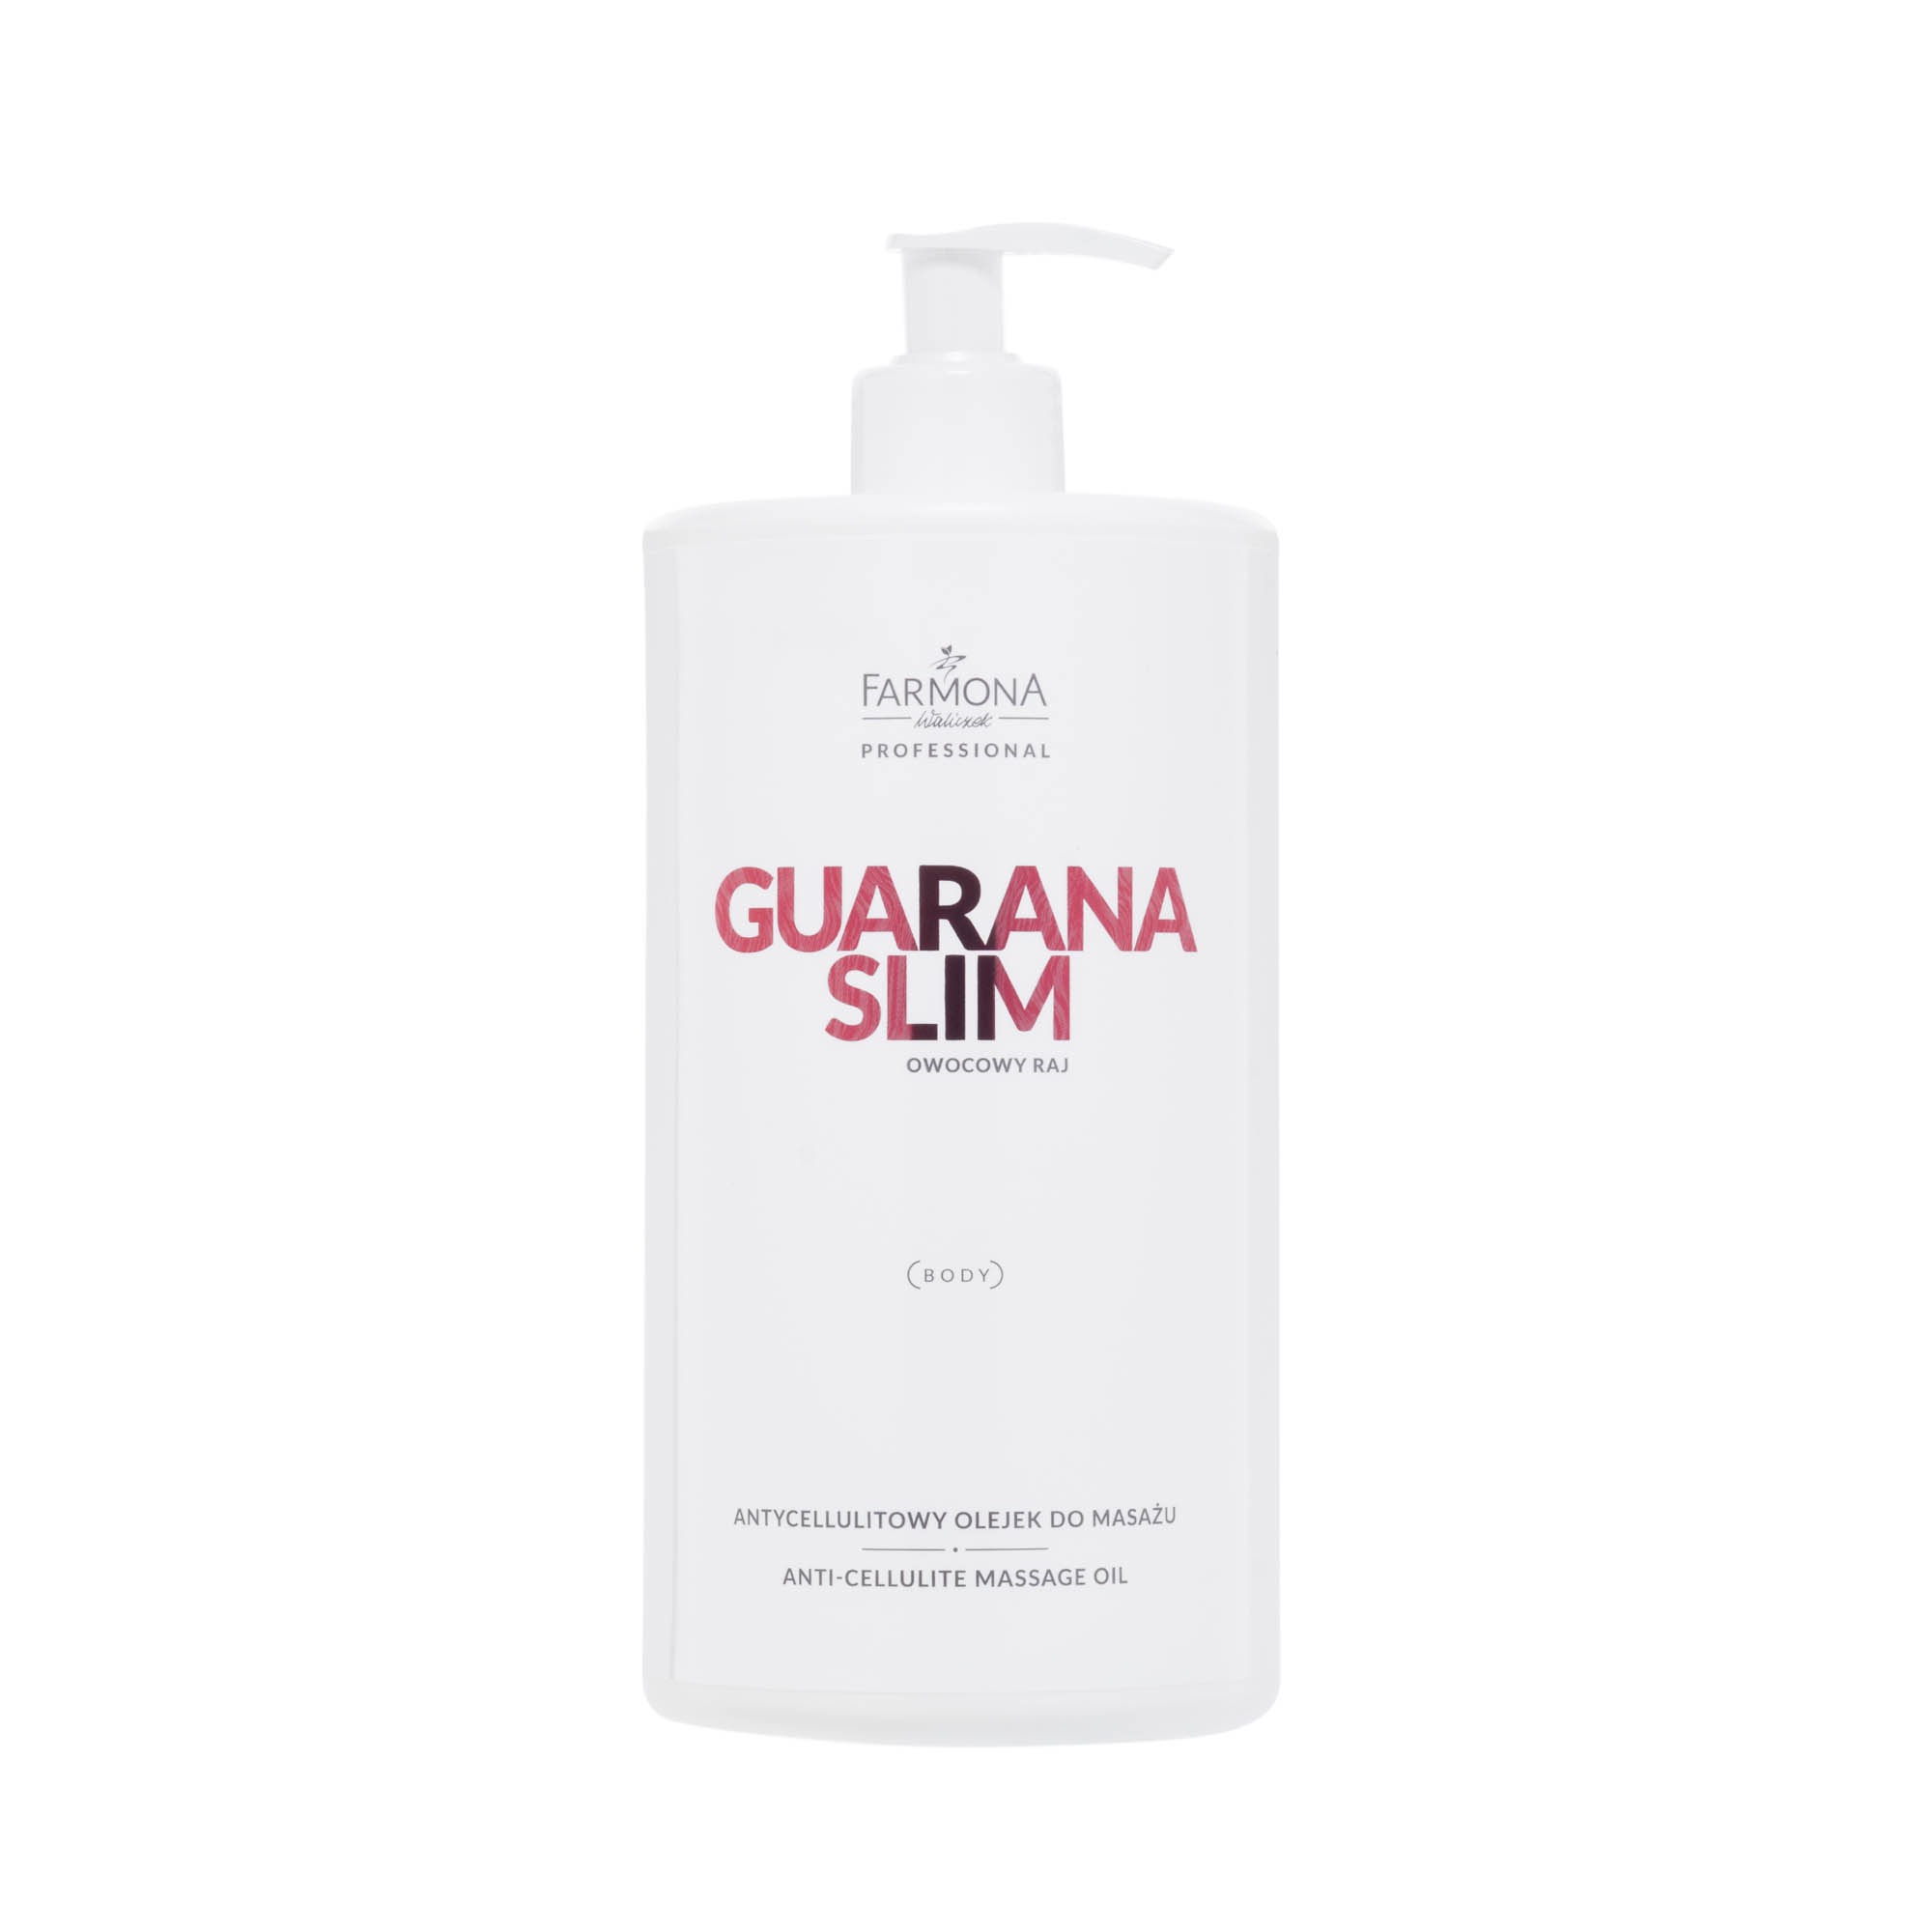 Farmona Guarana Slim – Antycellulitowy Olejek Do Masażu 950 ml